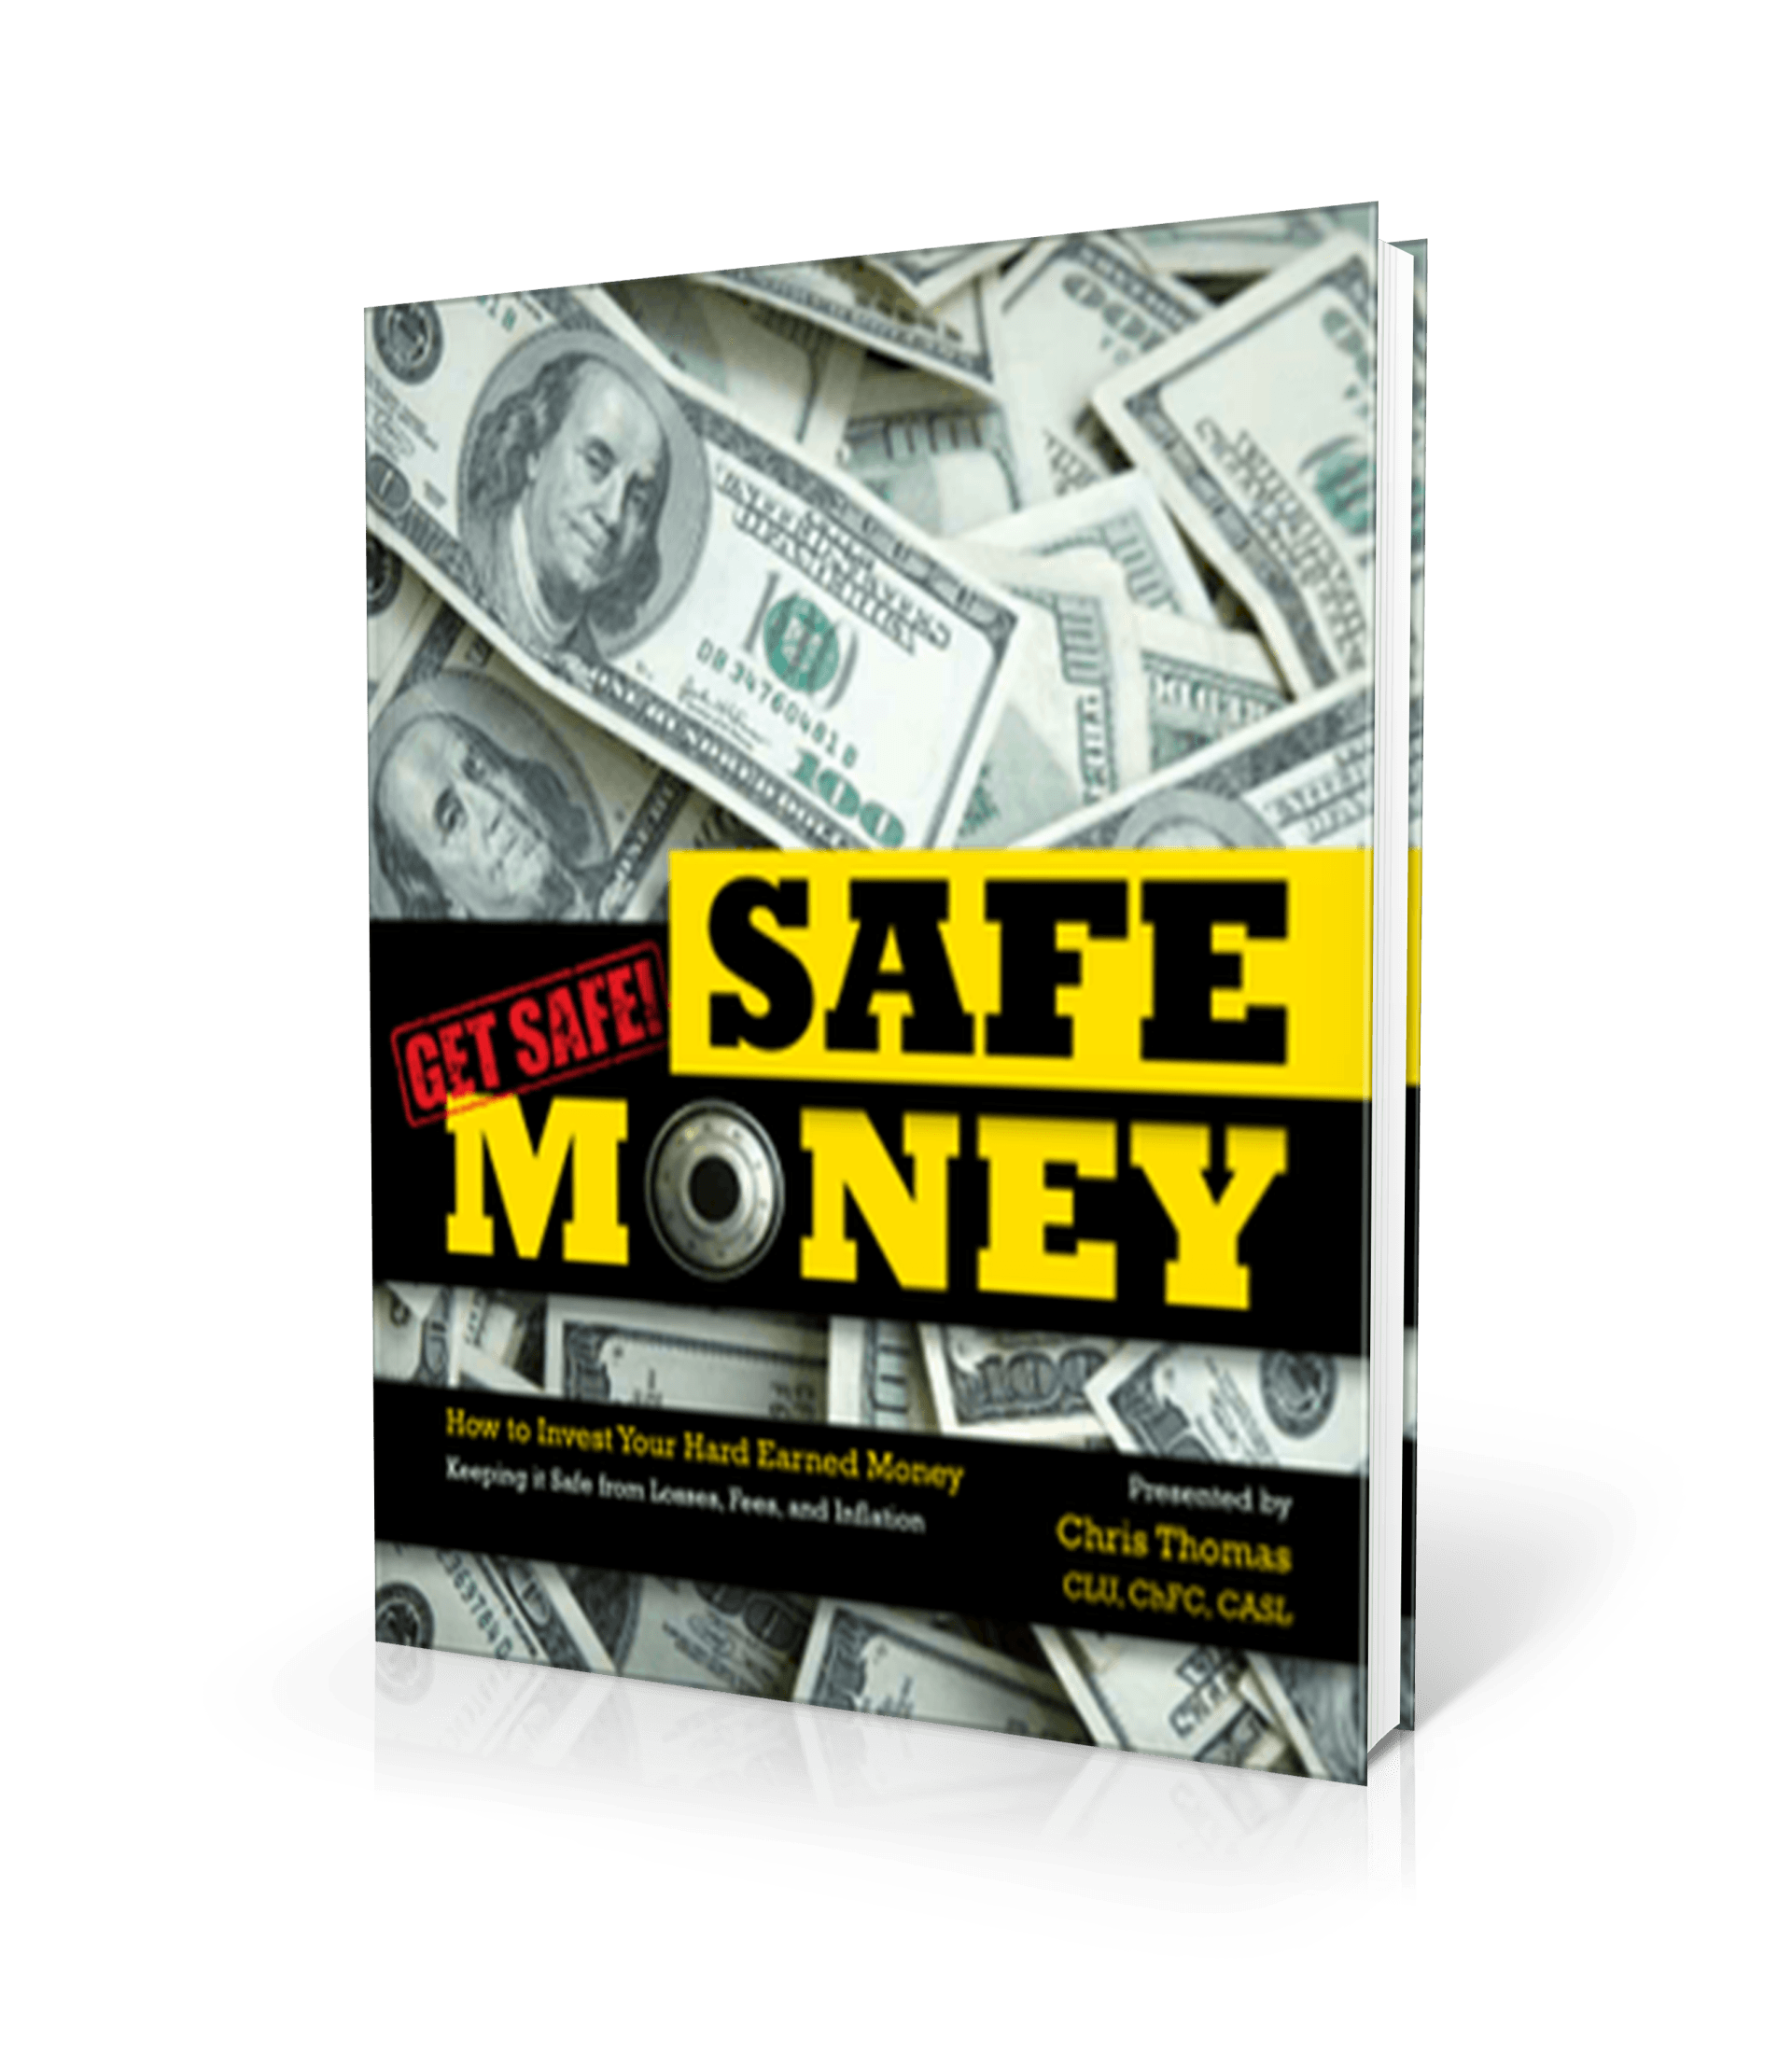 Get Safe! Safe Money book